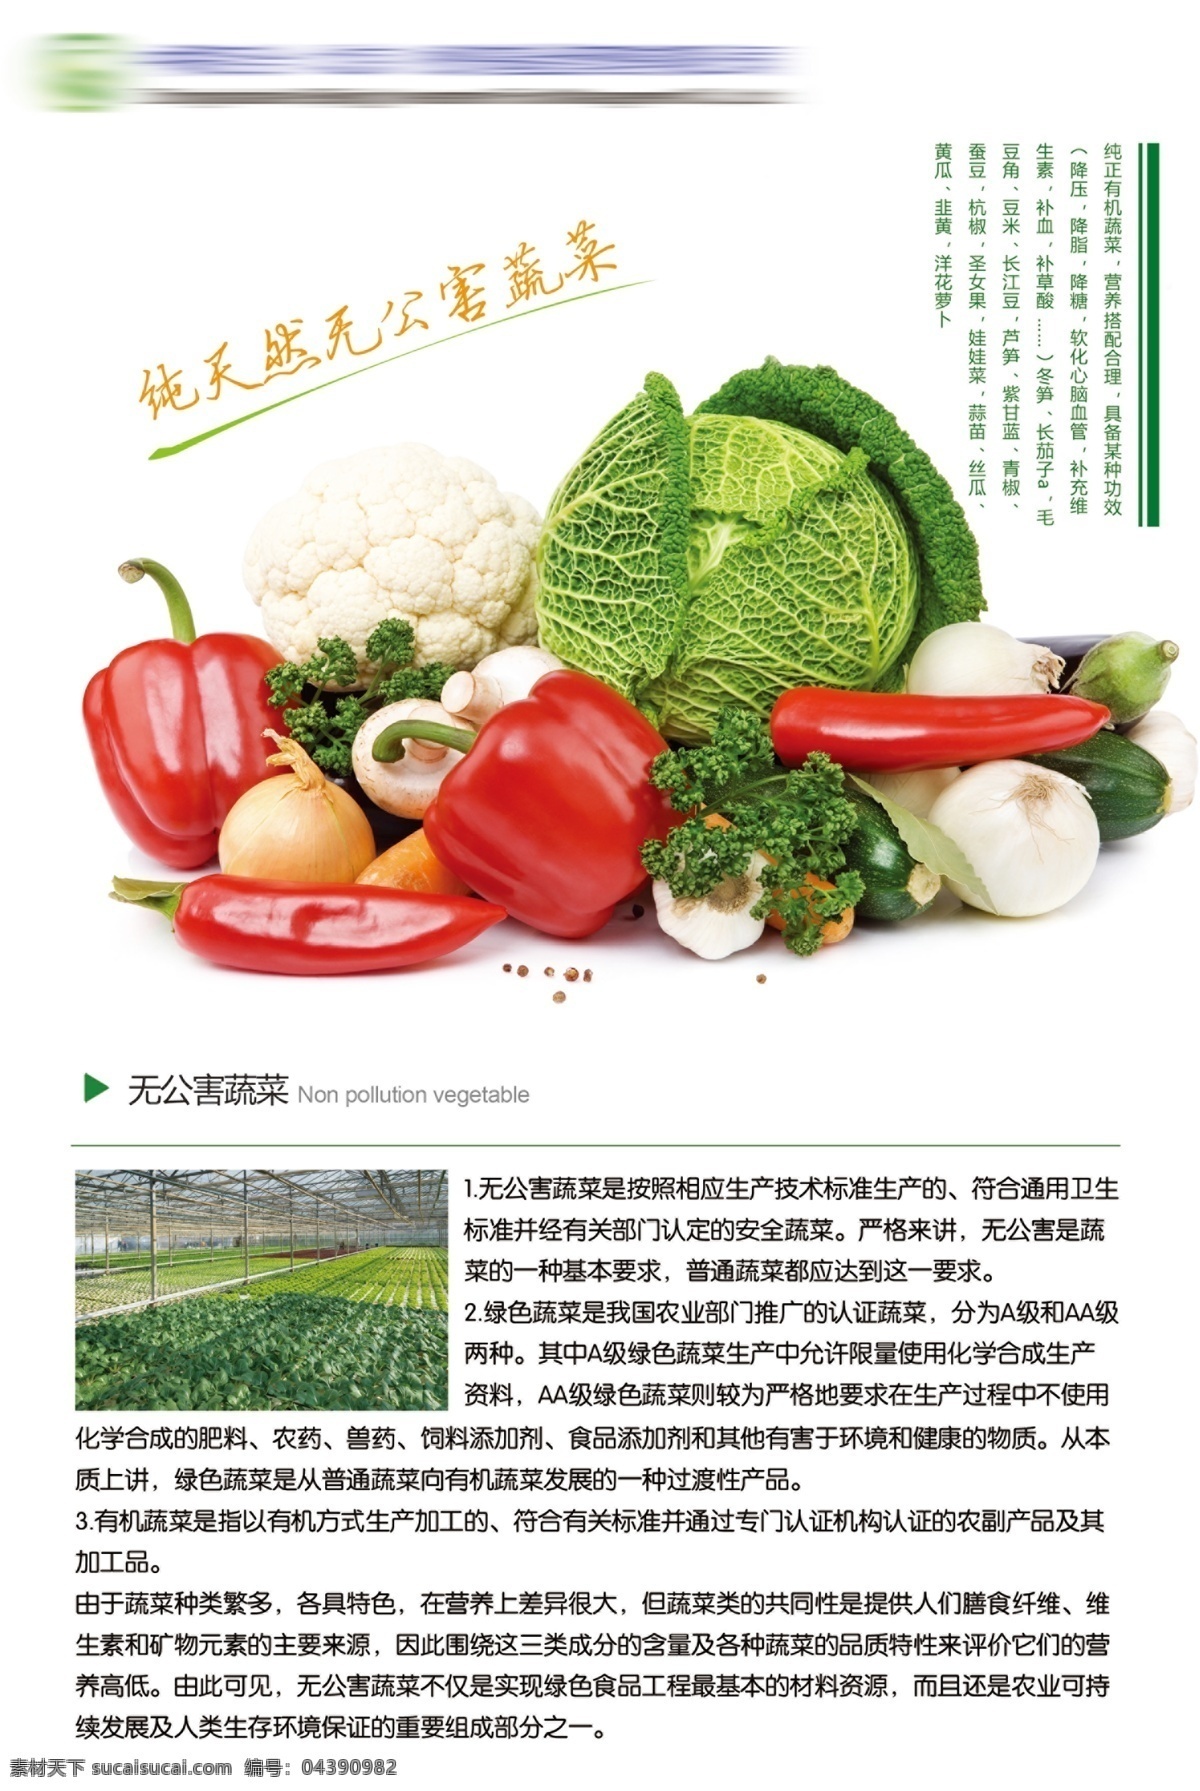 无公害 蔬菜 展板 海报 蔬菜海报 蔬菜广告 蔬菜展板 超市广告 有机蔬菜 农家蔬菜 辣椒 花菜 白菜 萝卜 香菇